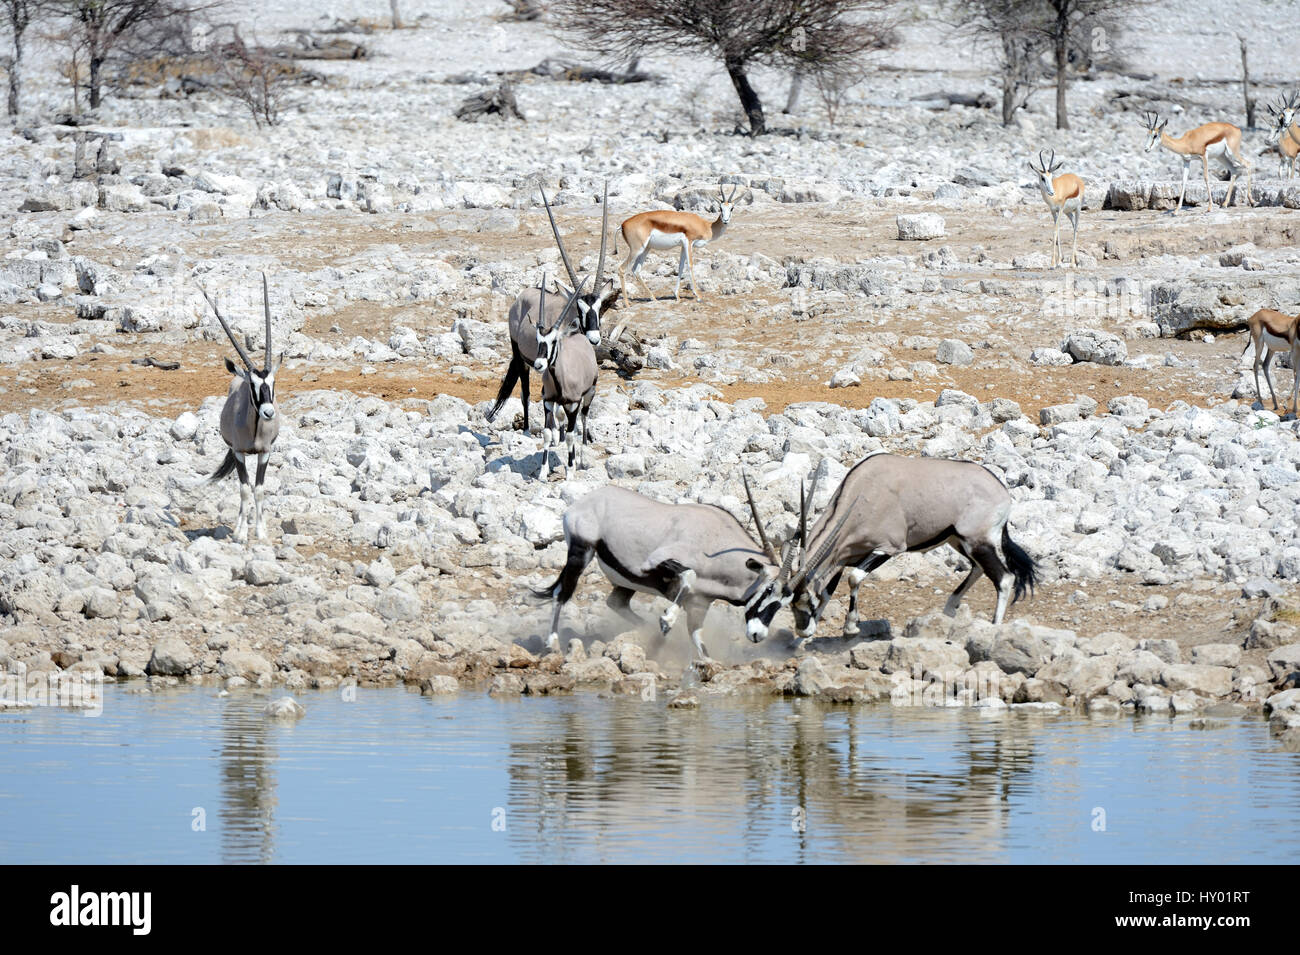 Gemsbok (Oryx gazella) hommes combattre à trou d'eau en saison sèche. Parc National d'Etosha, Namibie, Afrique. Octobre. Banque D'Images